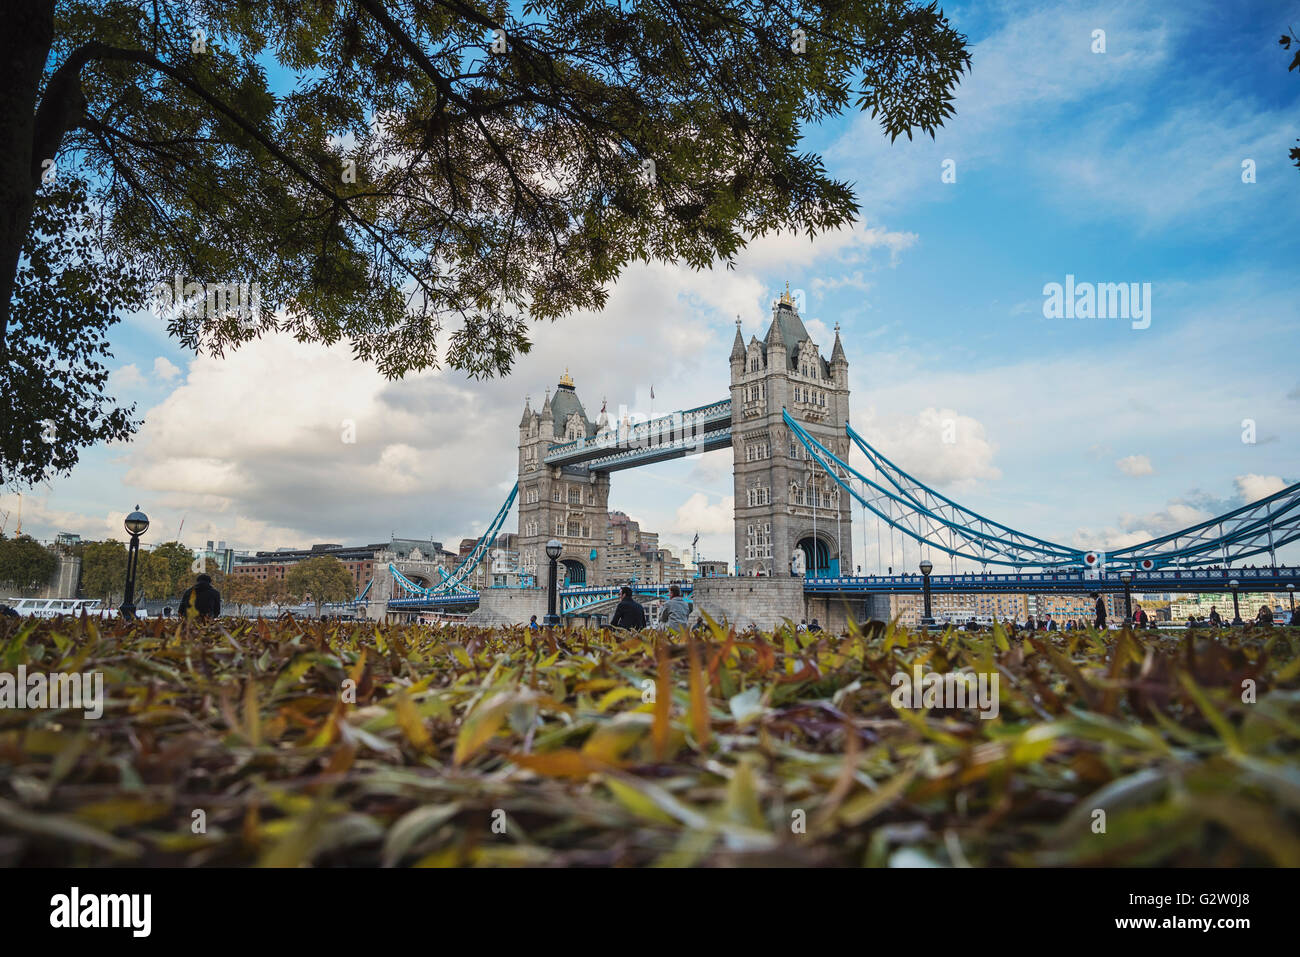 Belle vue sur le Tower Bridge de Londres à travers les arbres et les feuilles d'automne. Banque D'Images